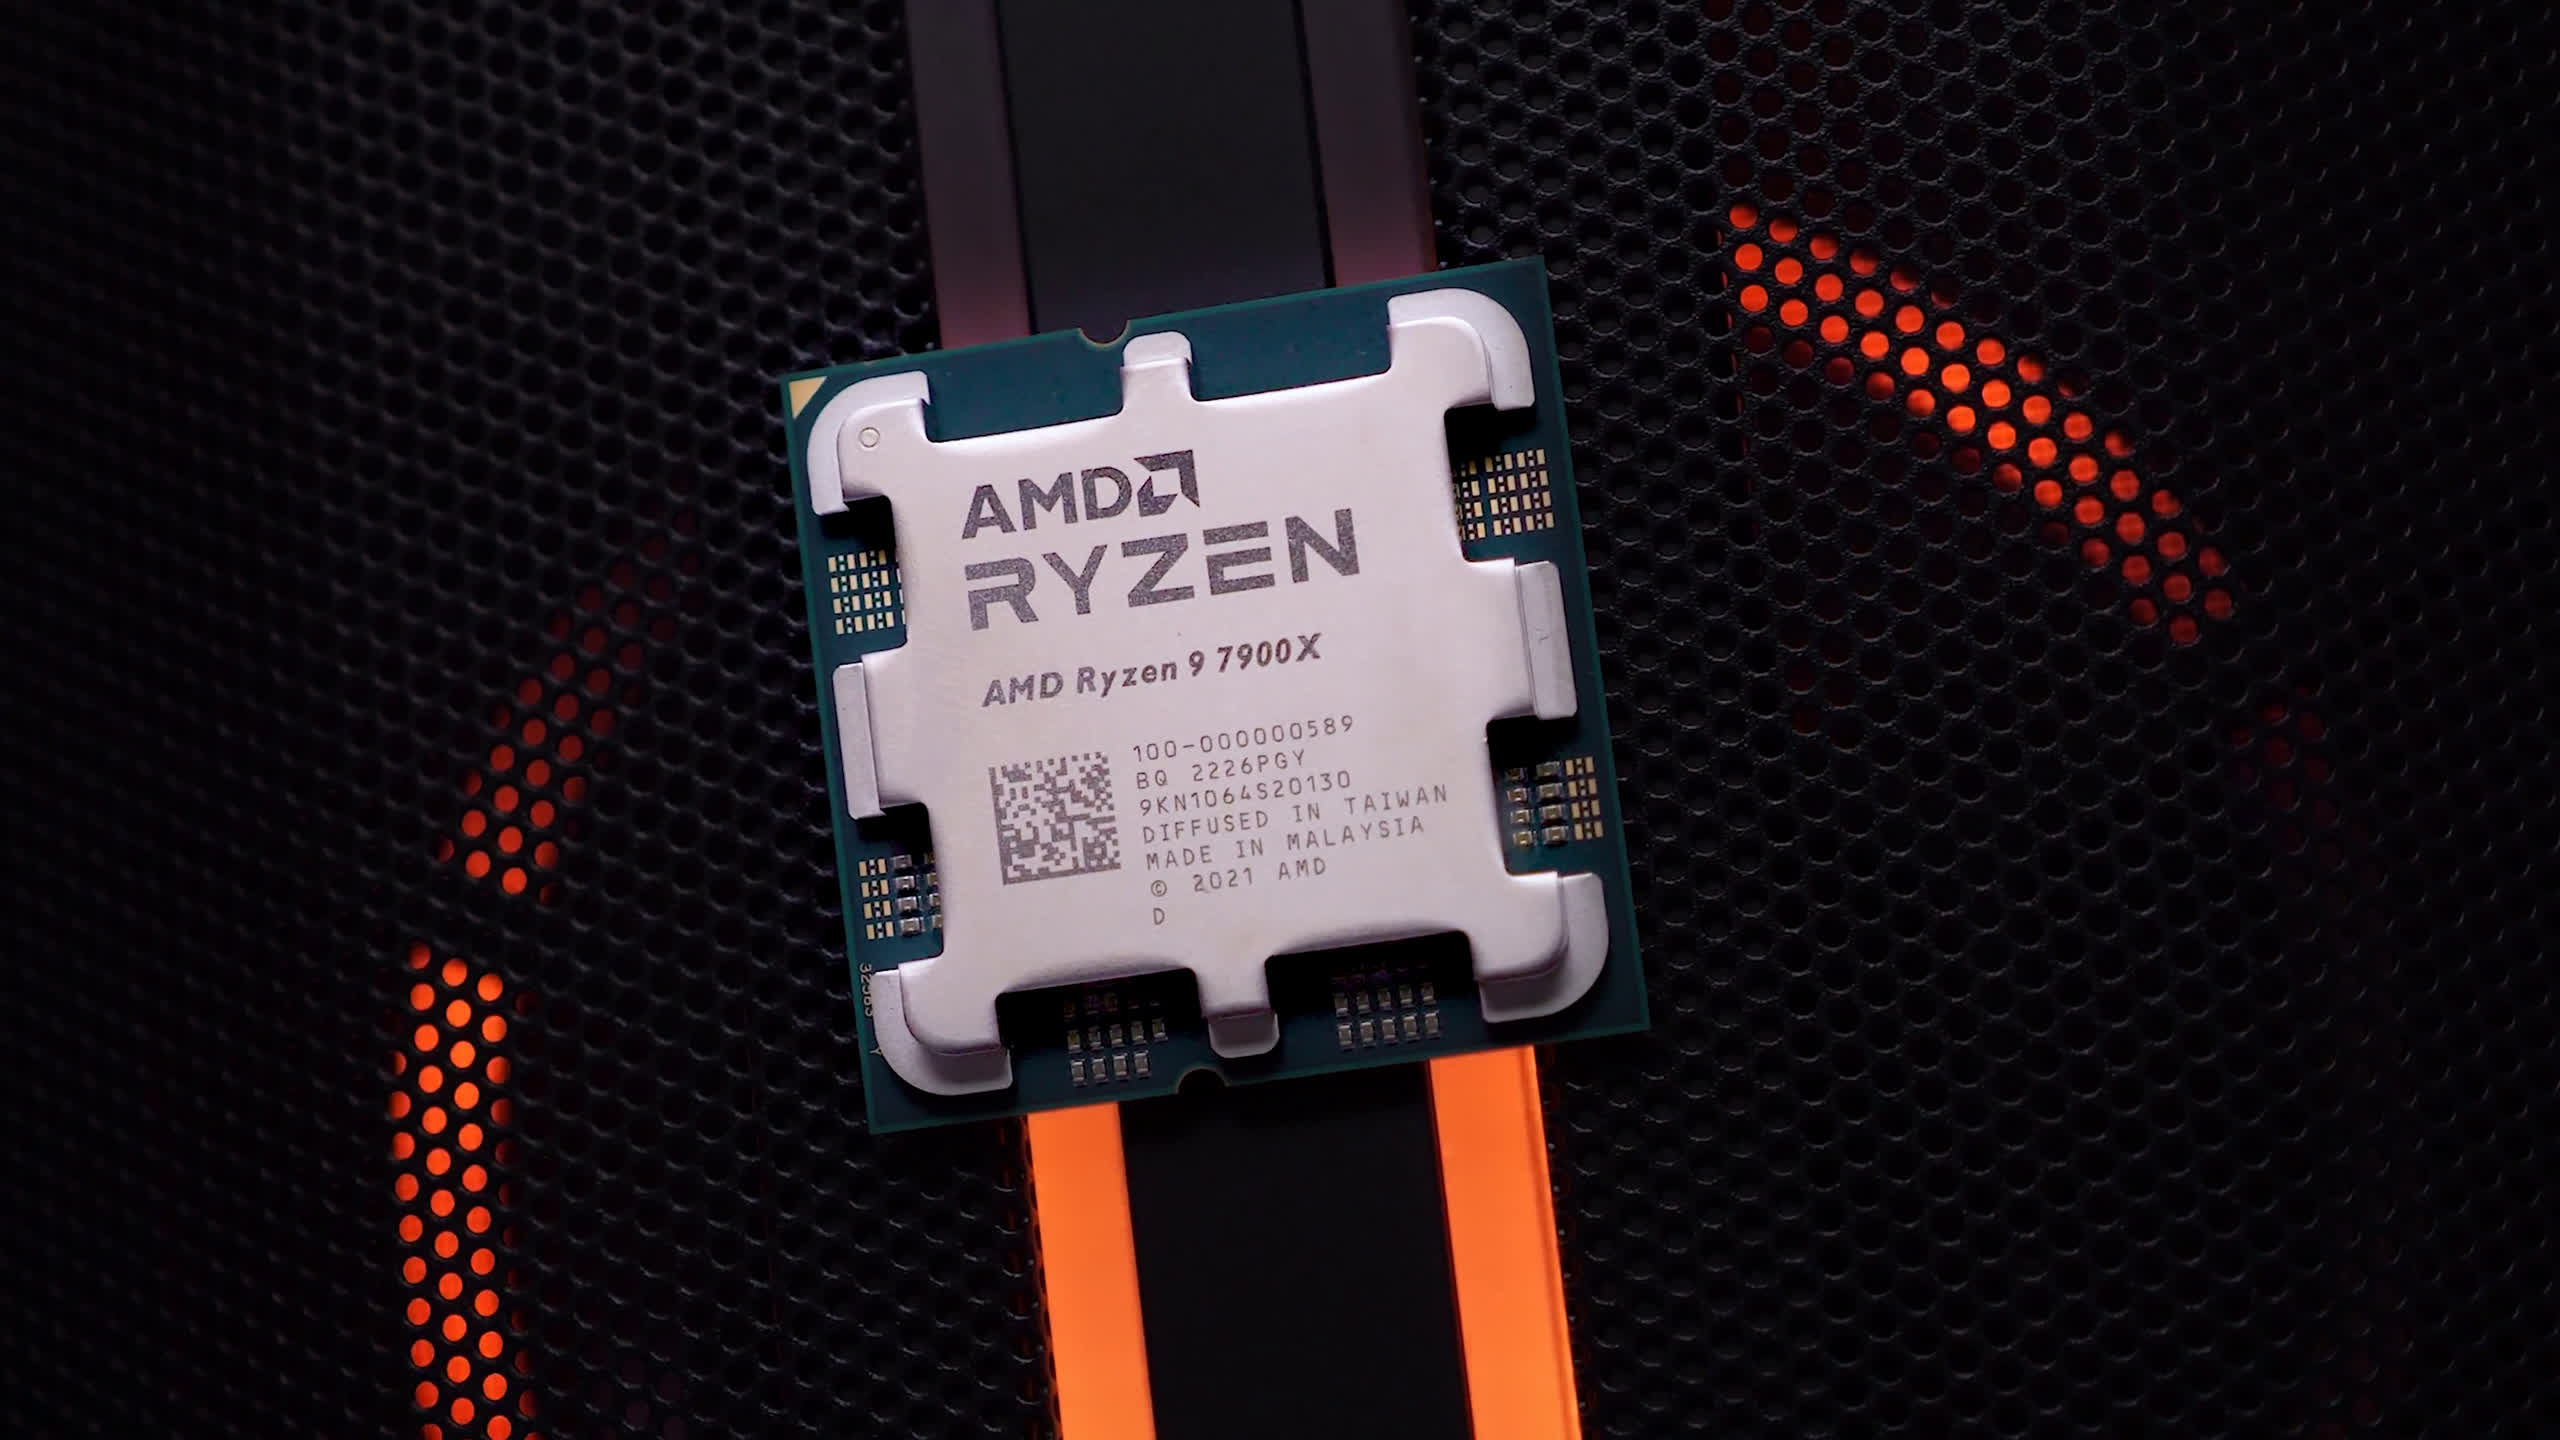 AMD Ryzen 9 7900X vs Intel Core i9 12900K